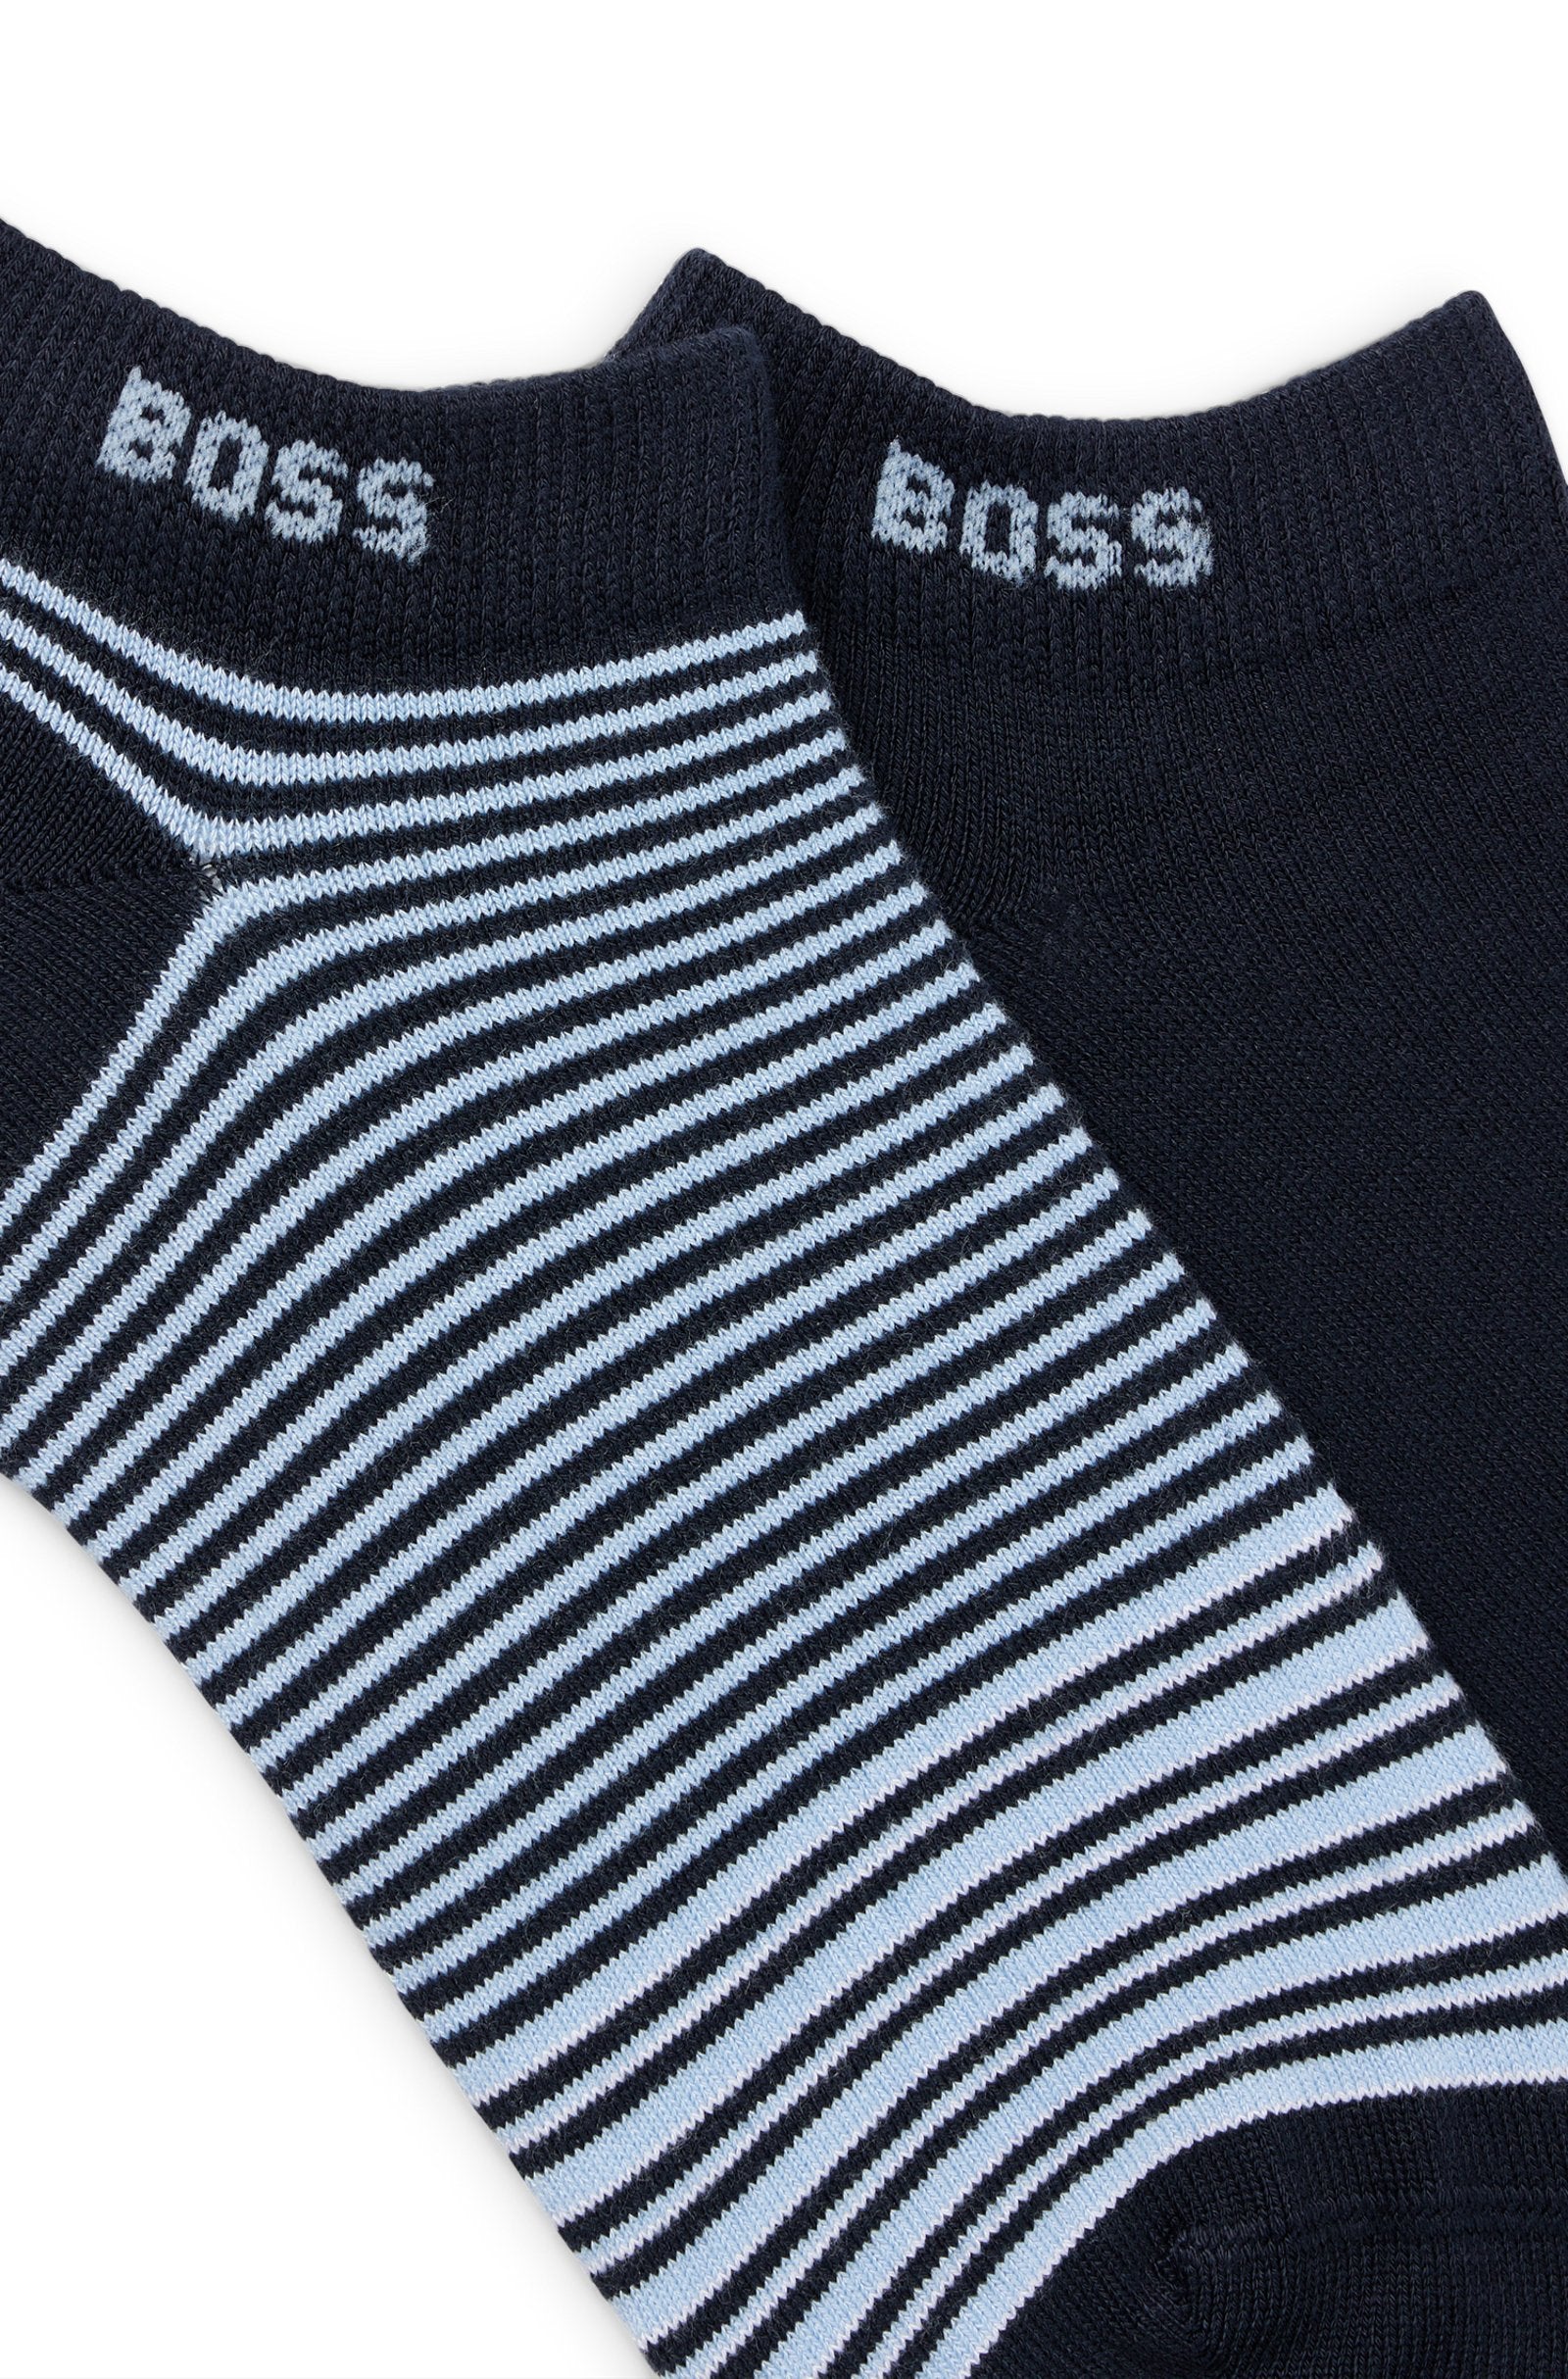 BOSS - 2-Pack Of Ankle Length Socks in Dark Blue 50515079 401